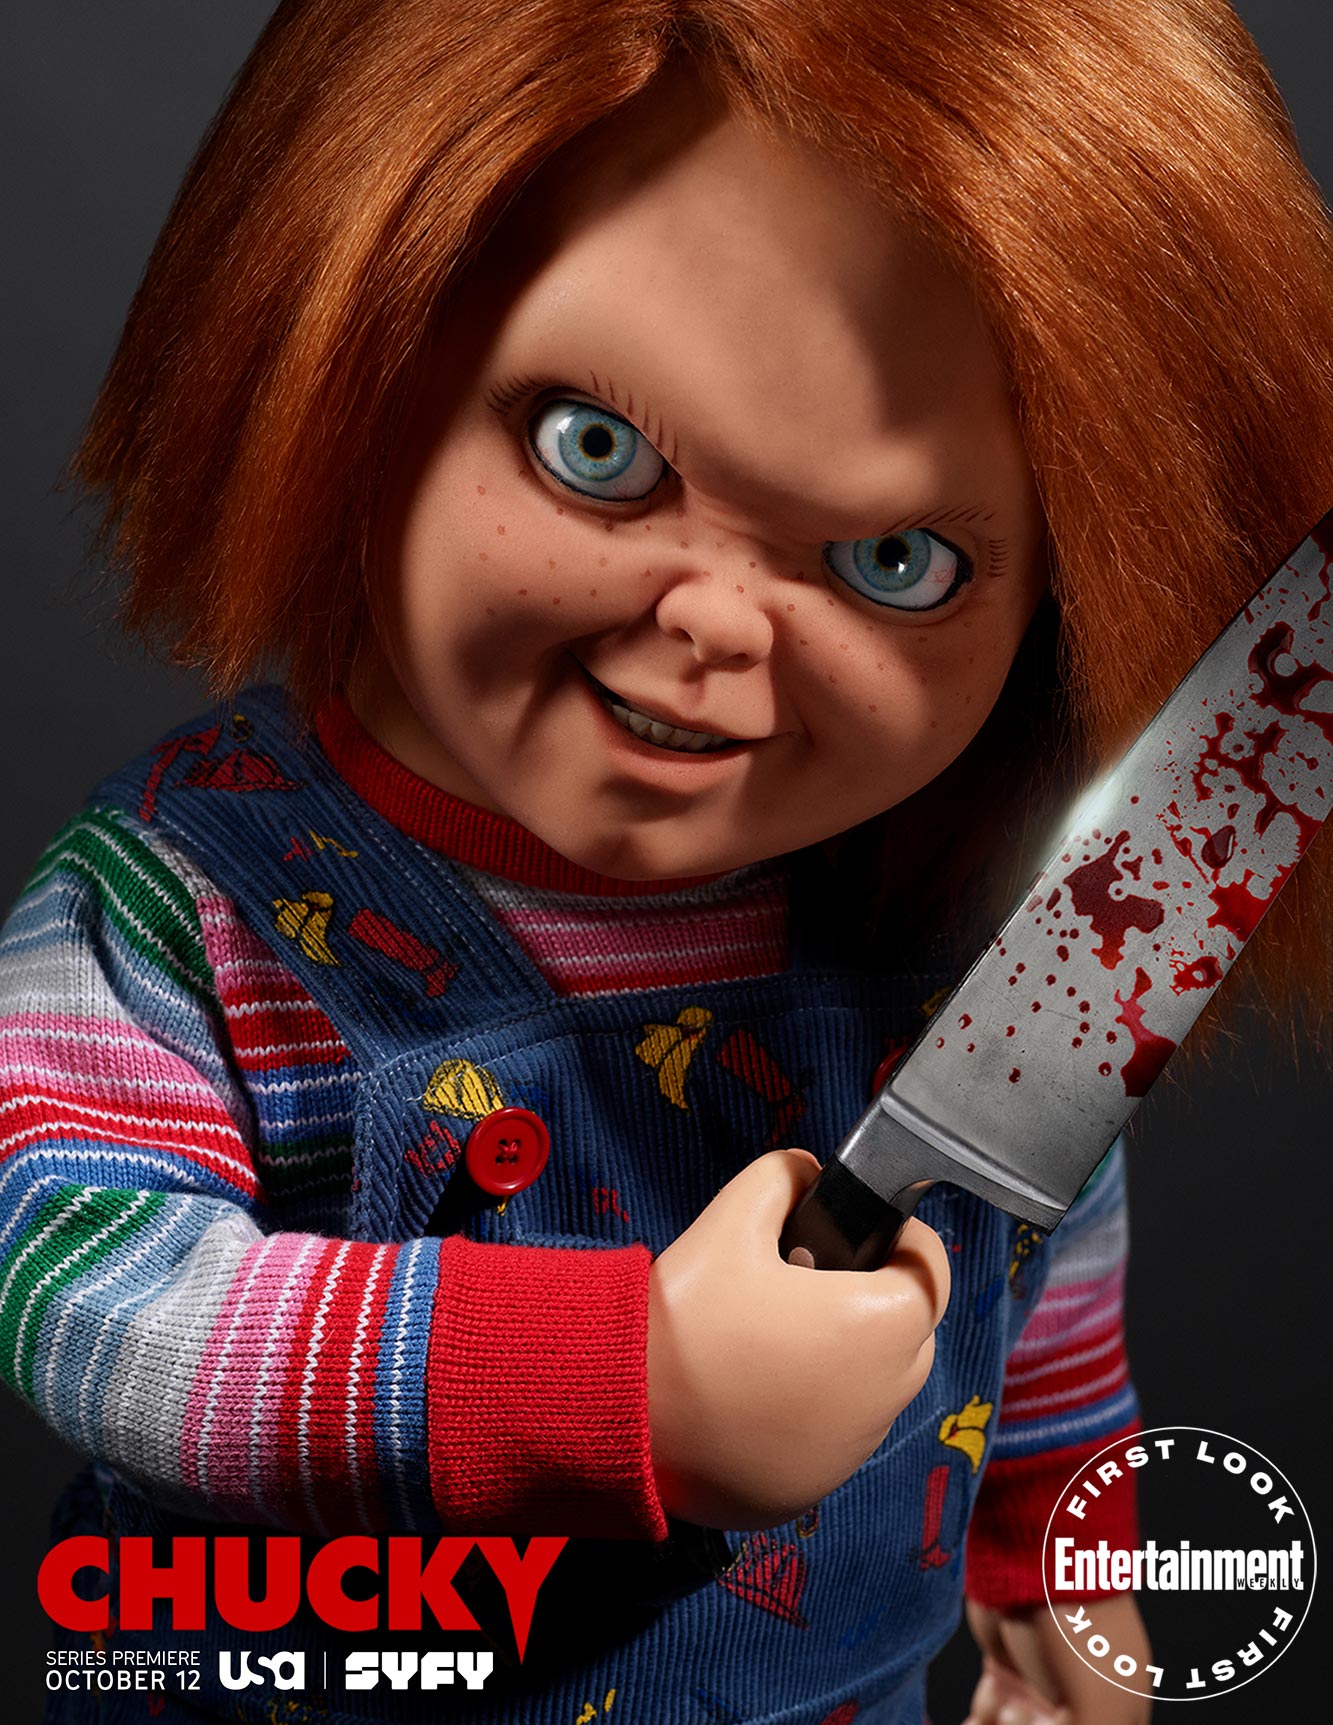 Chucky affiche série SyFy